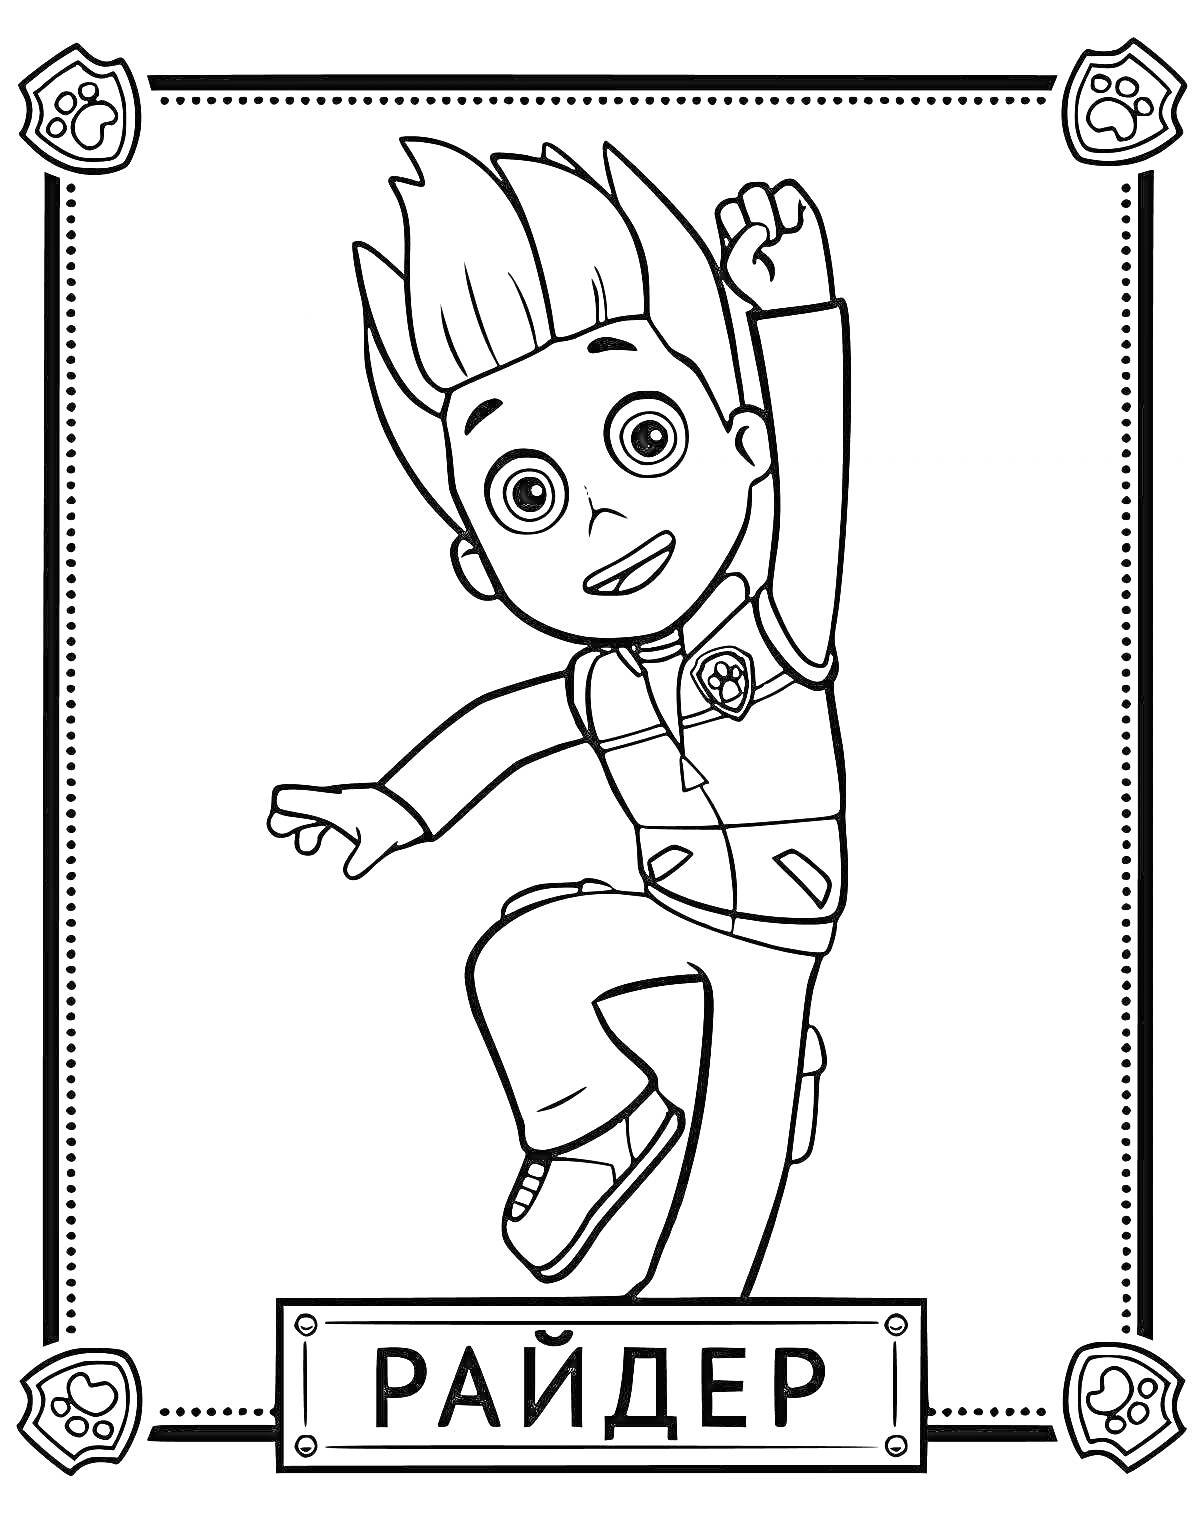 Мальчик-райдер с поднятой рукой в прыжке, в костюме с жилетом, в рамке с лапками на углах, слово 